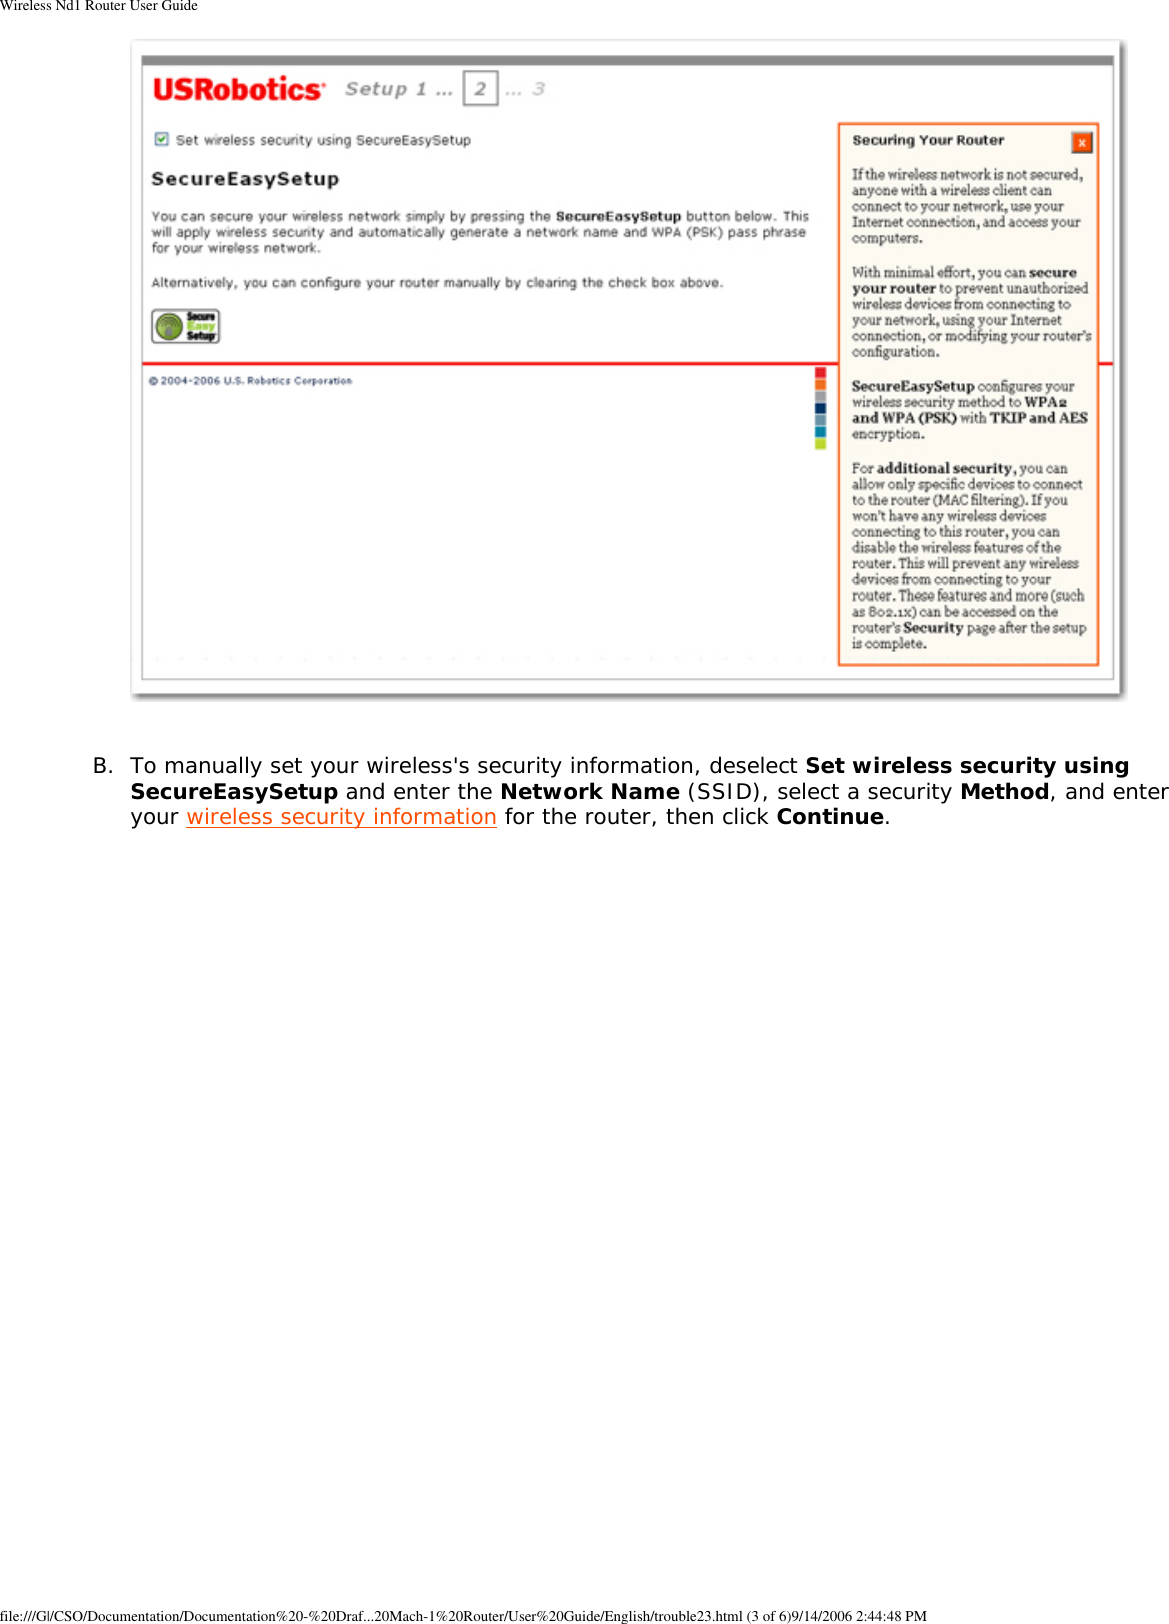 Page 52 of GemTek Technology R950630GN USRobotics Wireless Nd1 Router User Manual Wireless Nd1 Router User Guide